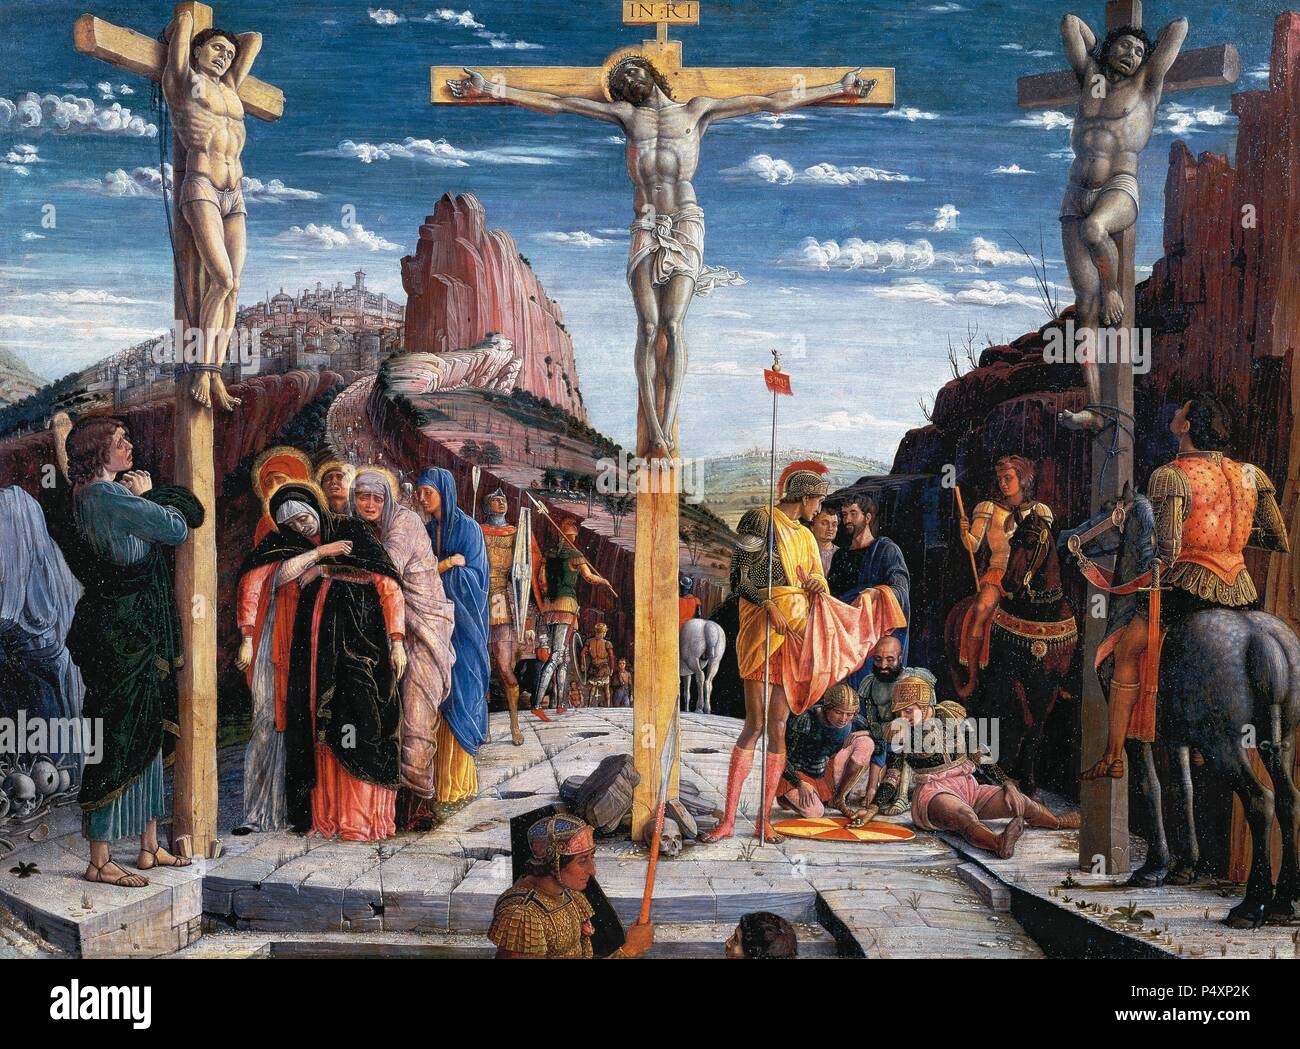 Renaissance. Andrea Mantegna (1431-1506). Italienischer Maler. Quattrocento. Die Kreuzigung. Zentraler Bestandteil der Predella des Hochaltars. 1457-1459. Öl auf Leinwand. Louvre, Pari s. Stockfoto